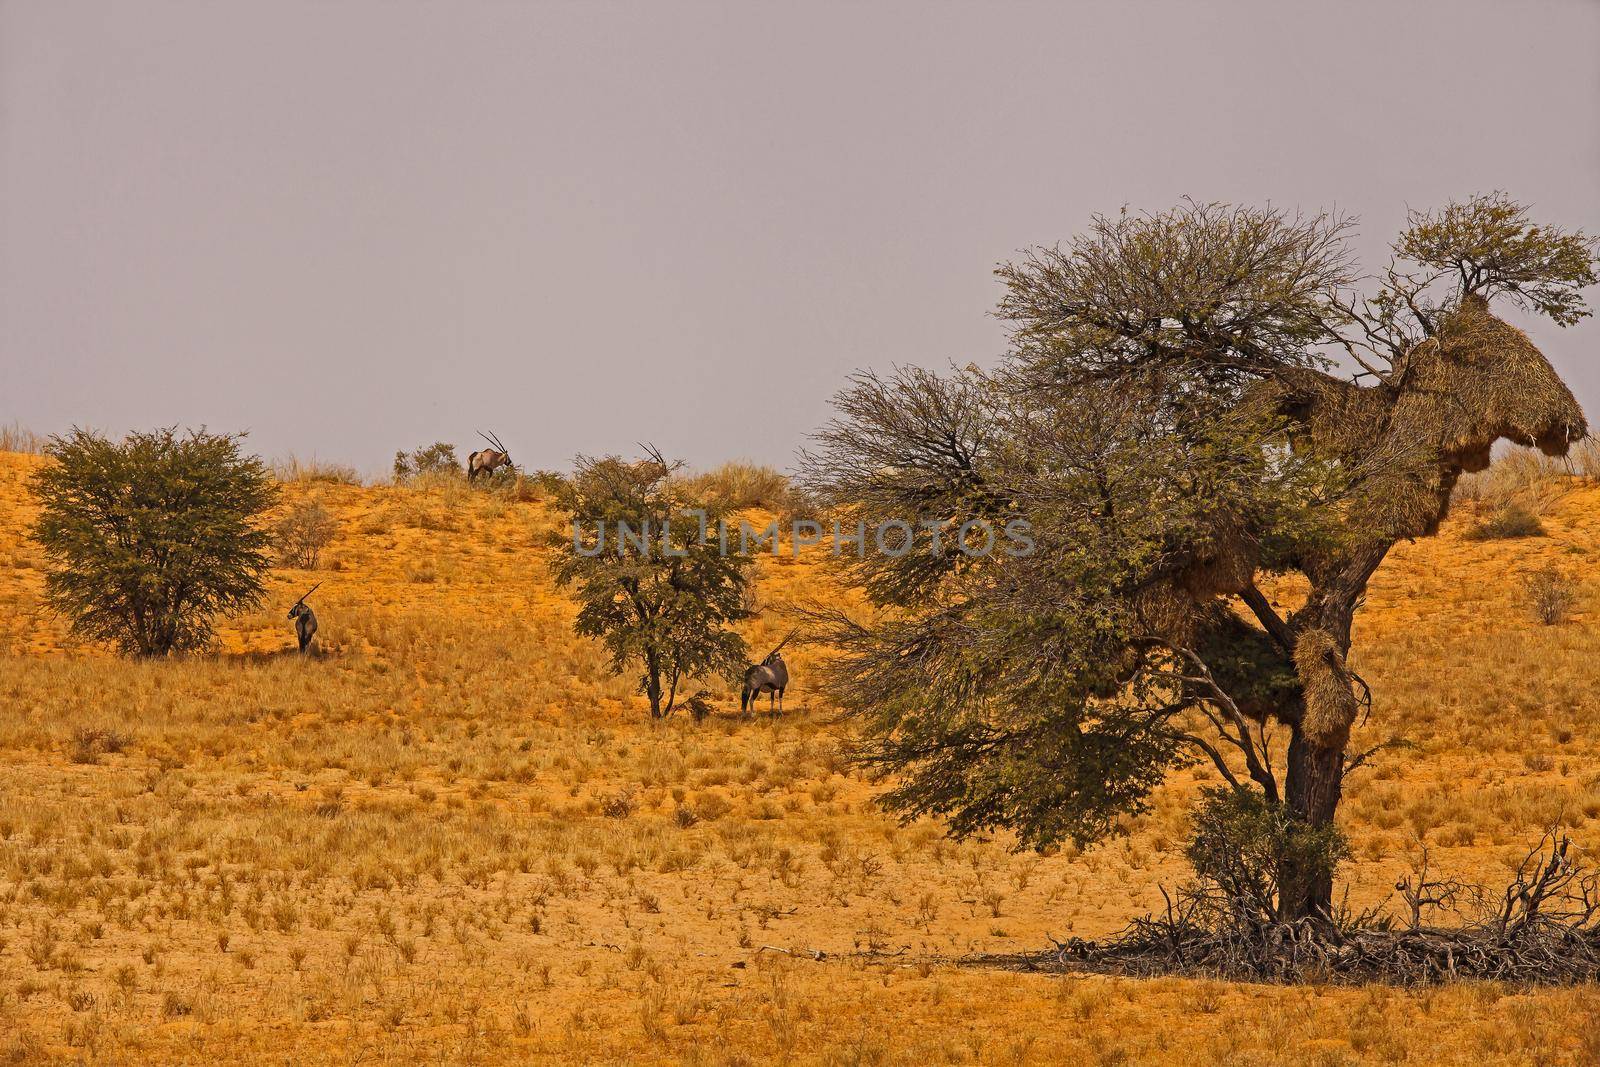 Oryx (Oryx gazella) in desert heat 5013 by kobus_peche